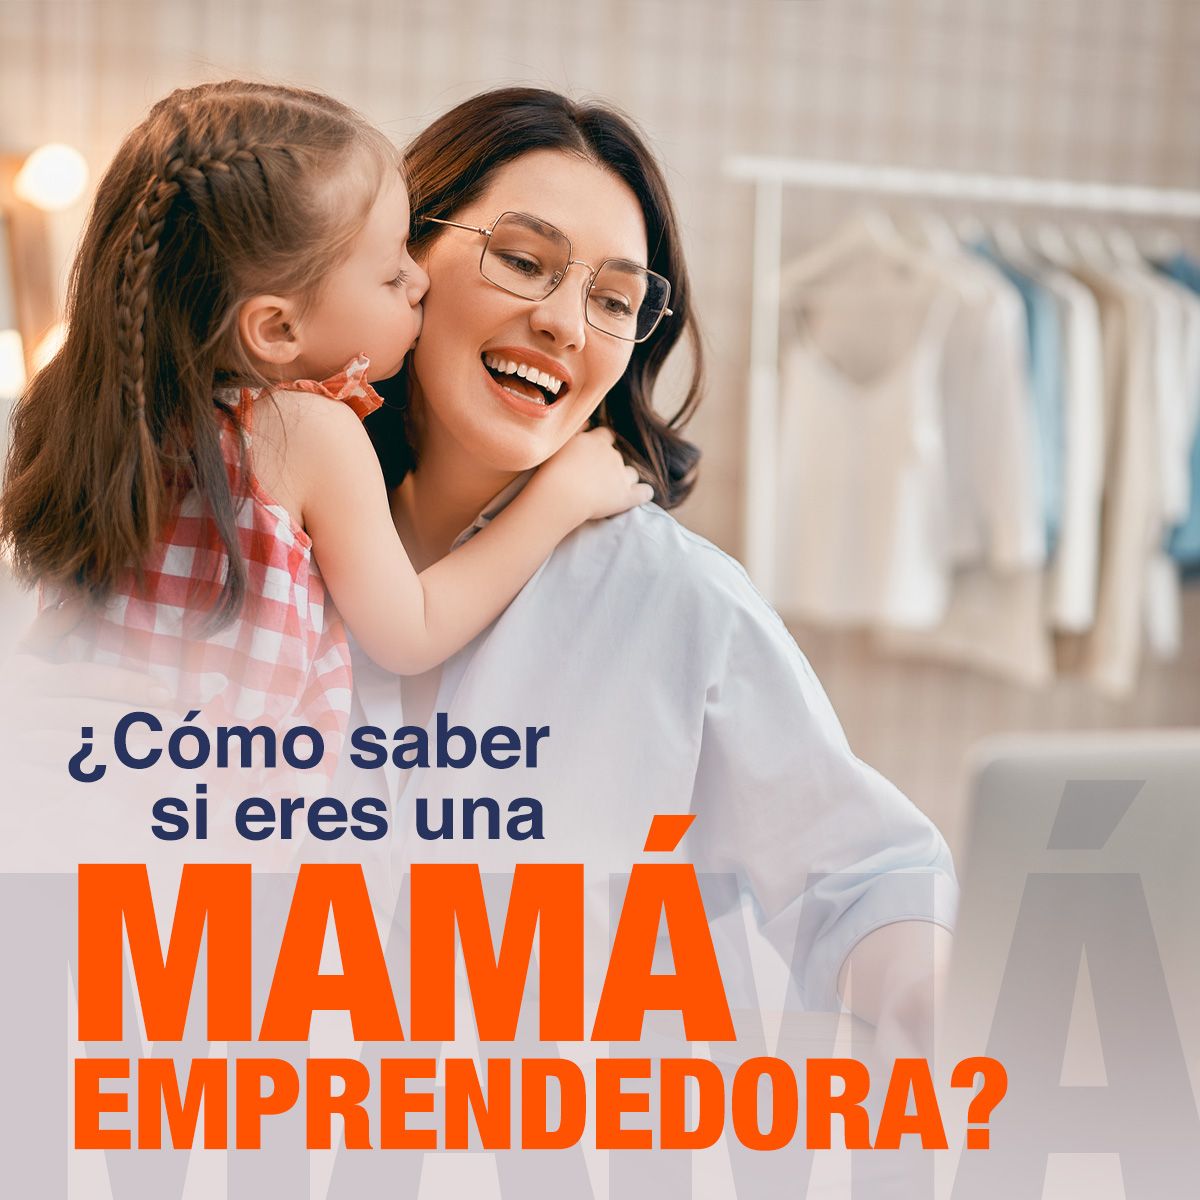 ¿Cómo saber si eres una mamá emprendedora?